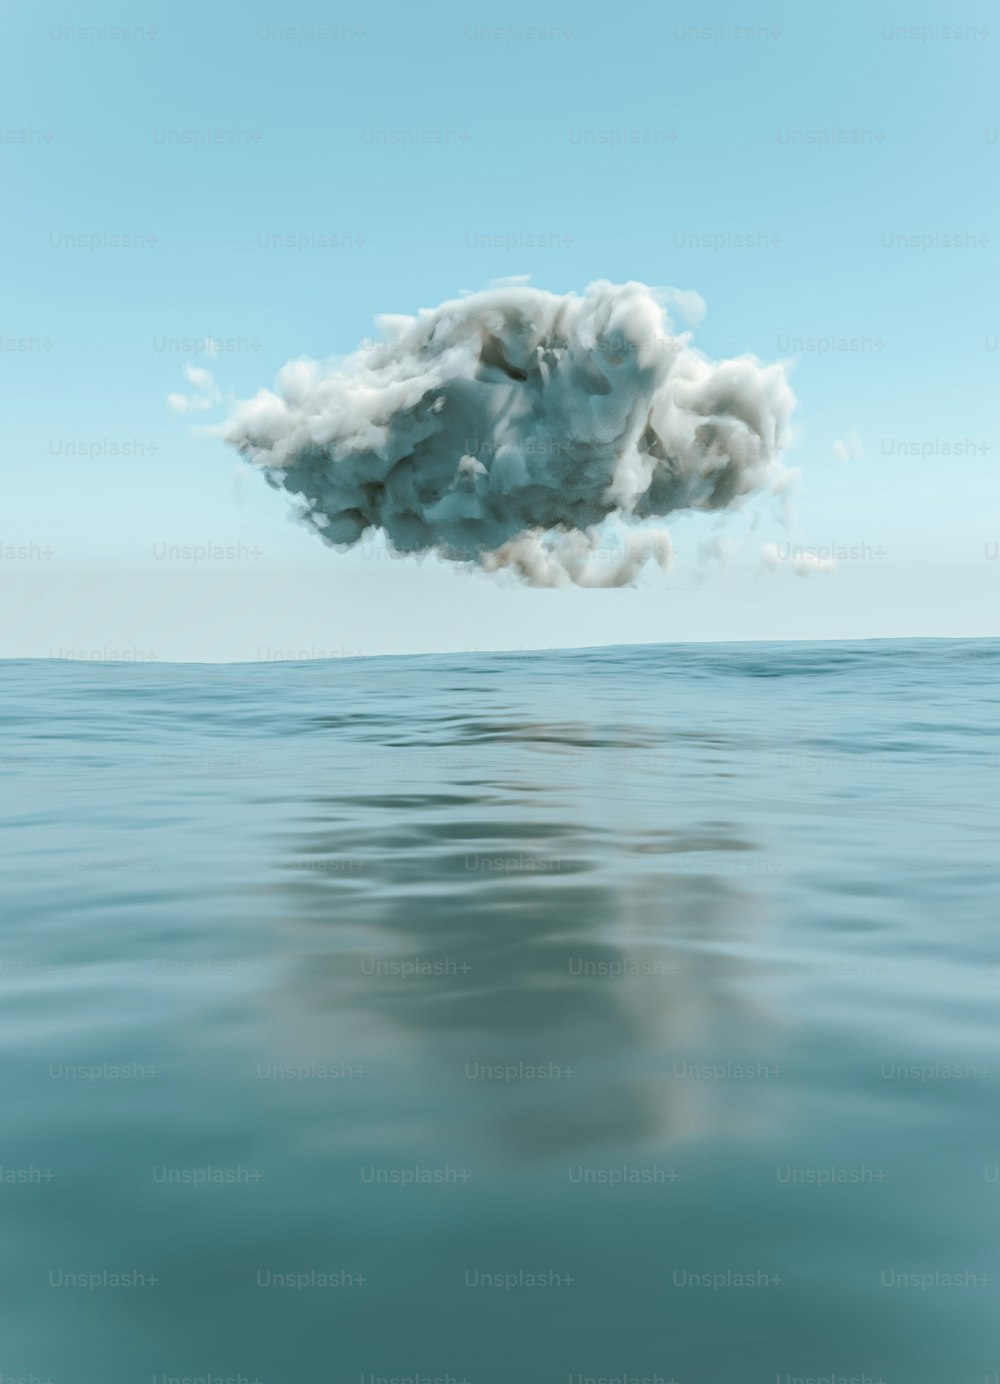 Una nuvola che fluttua nell'aria sopra uno specchio d'acqua